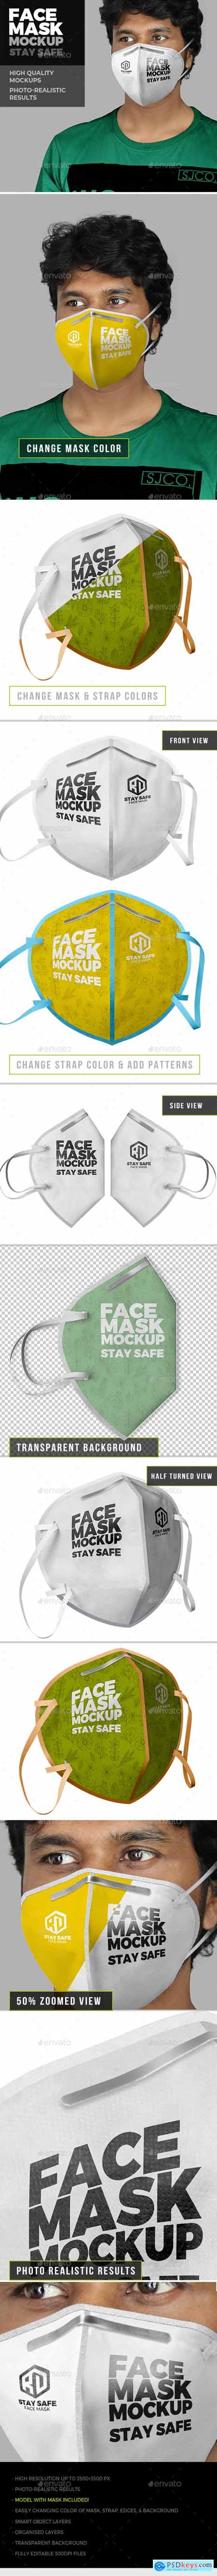 Face Mask Mockup 26422522